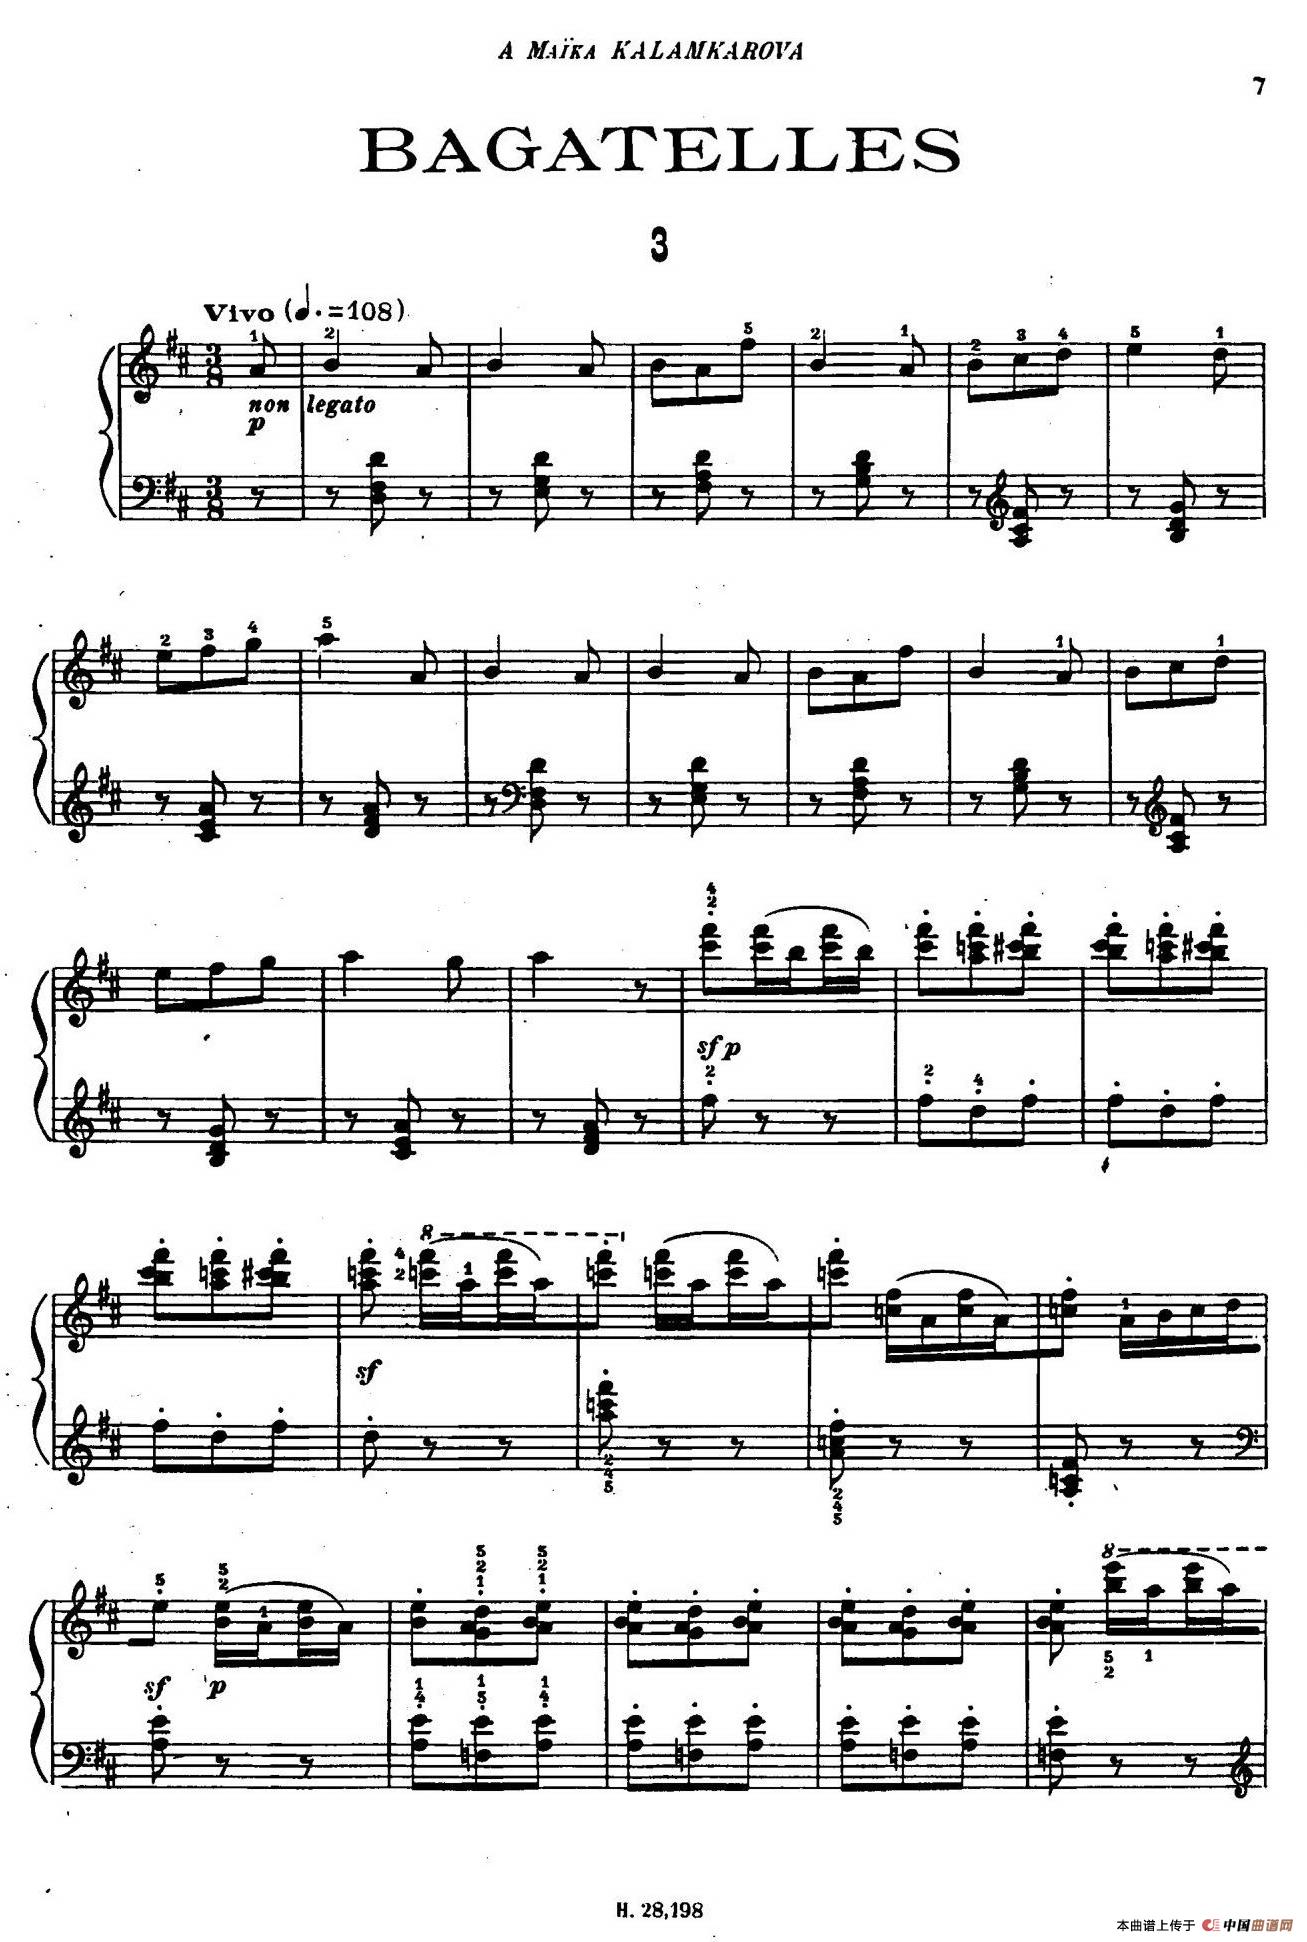 Tcherepnin - 10 Bagatelles Op.5（齐尔品-10首小品·3）(1)_006.jpg